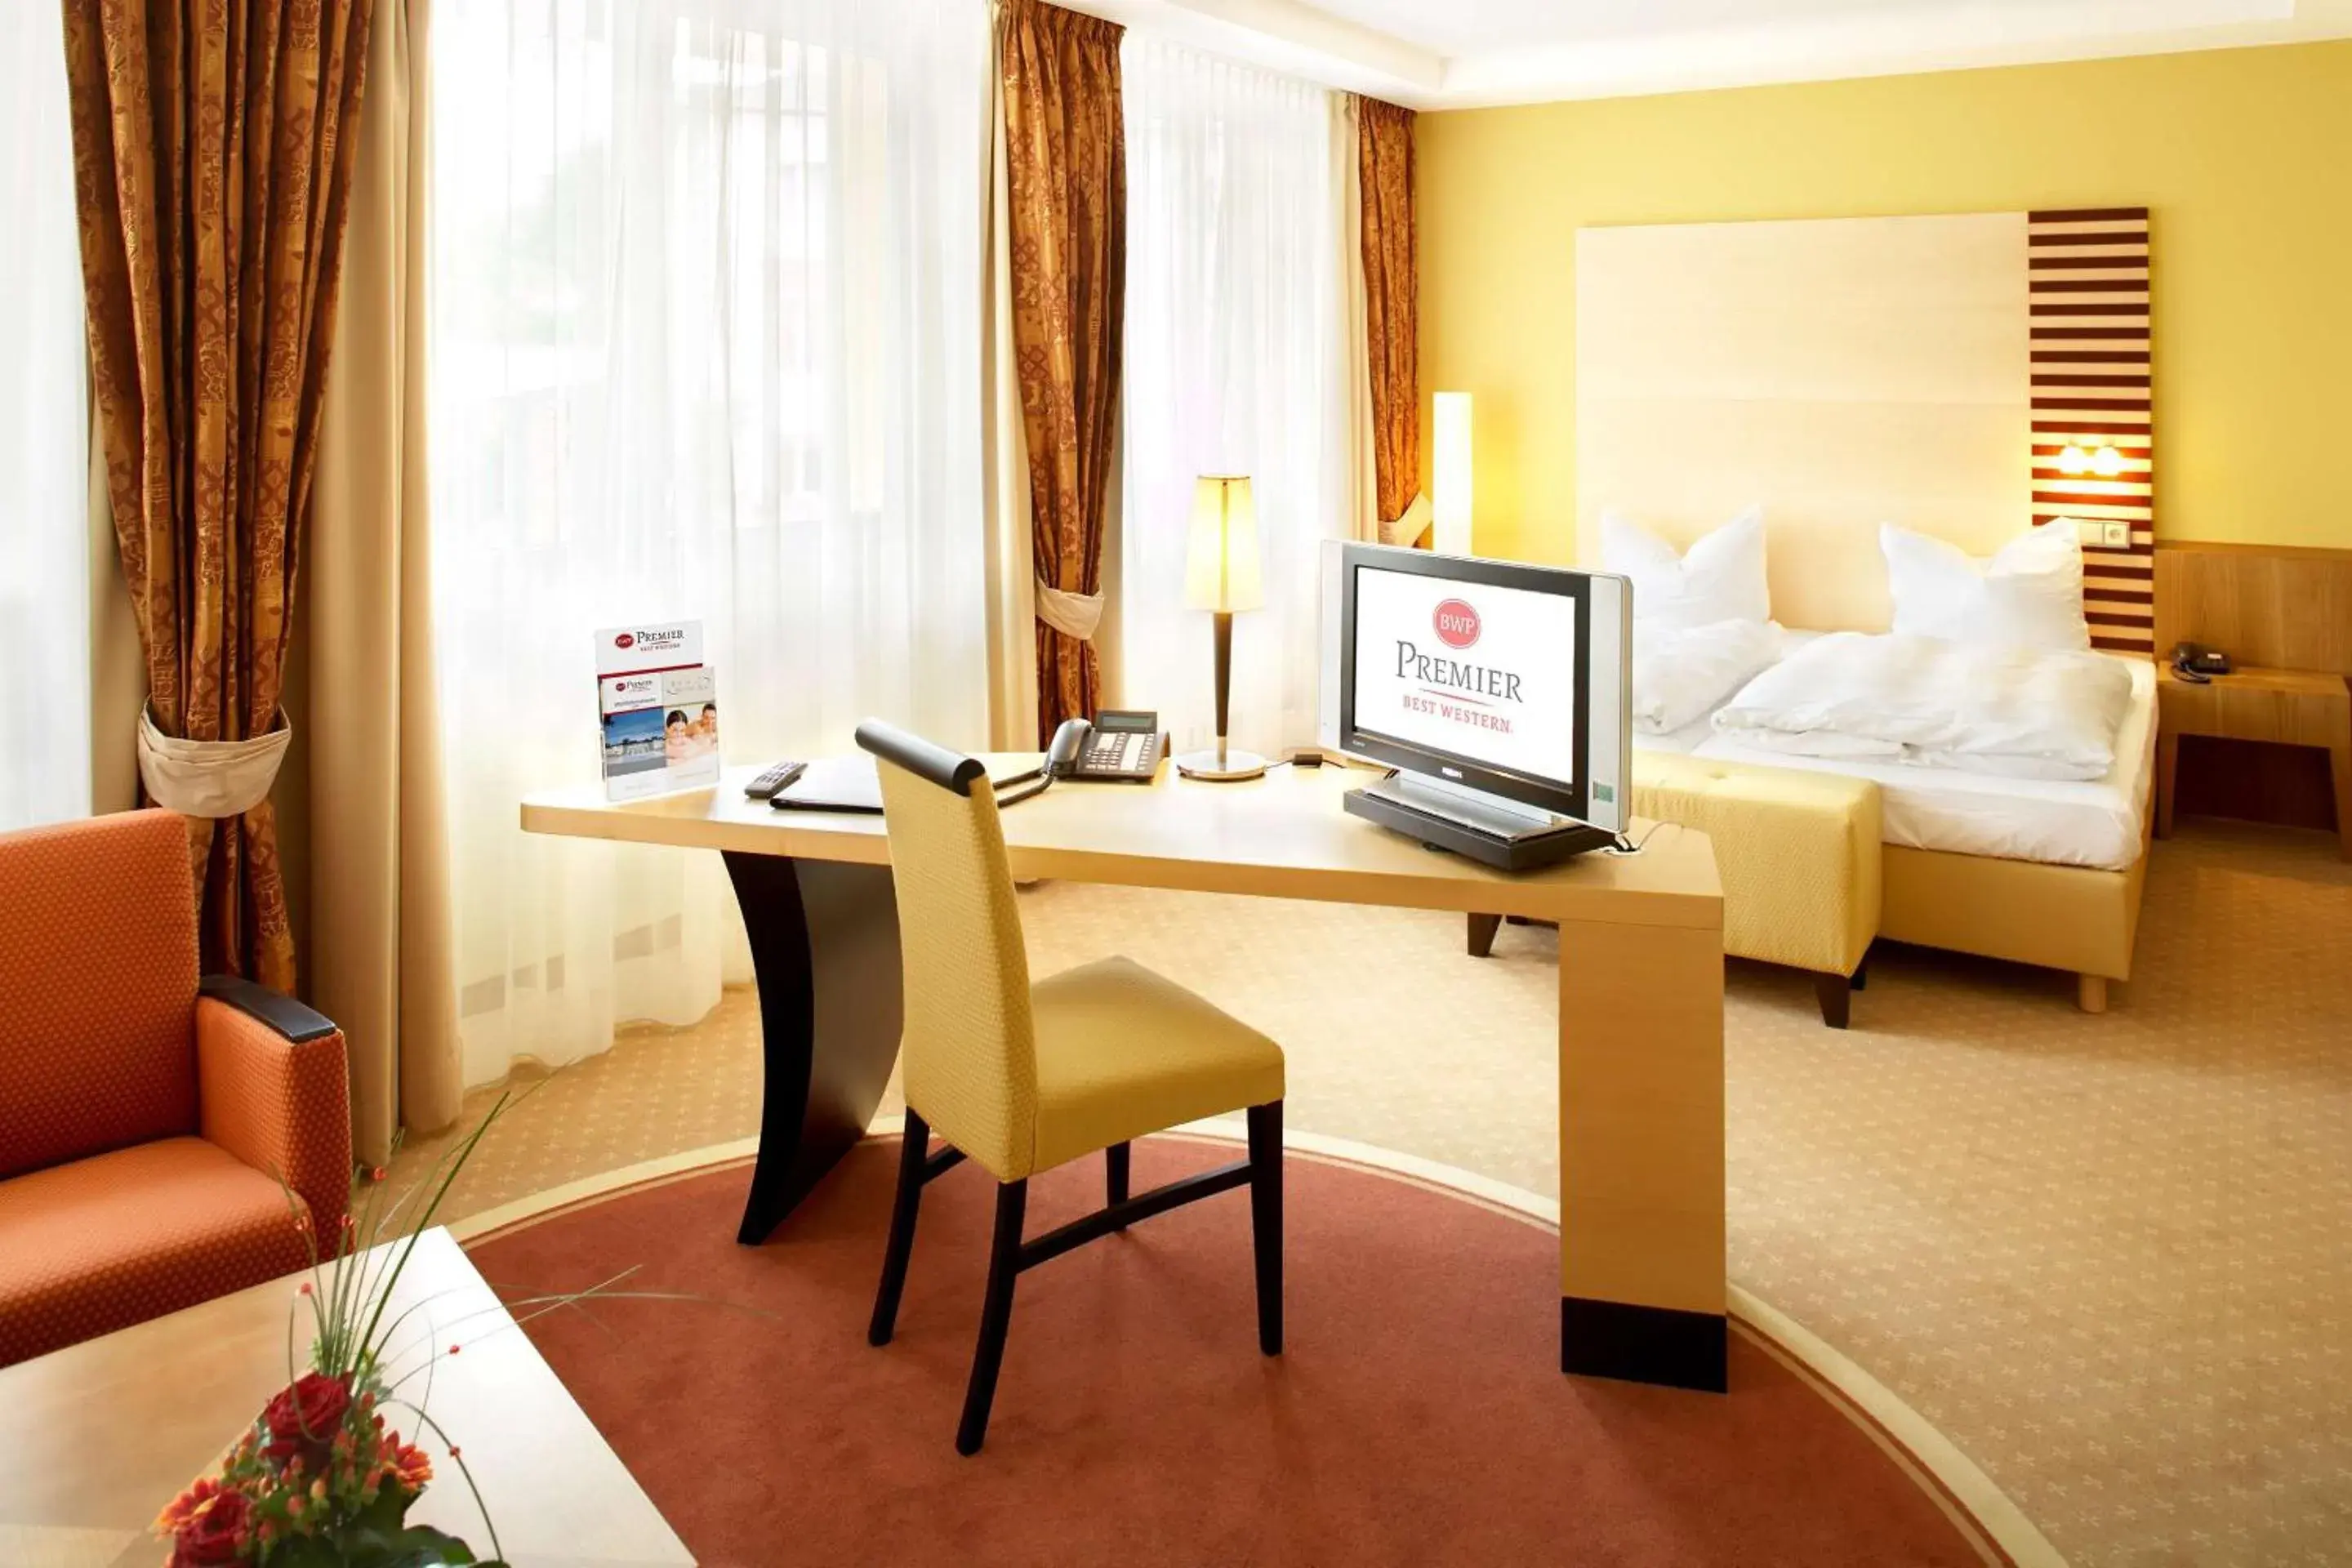 Bedroom in Best Western Premier Park Hotel & Spa